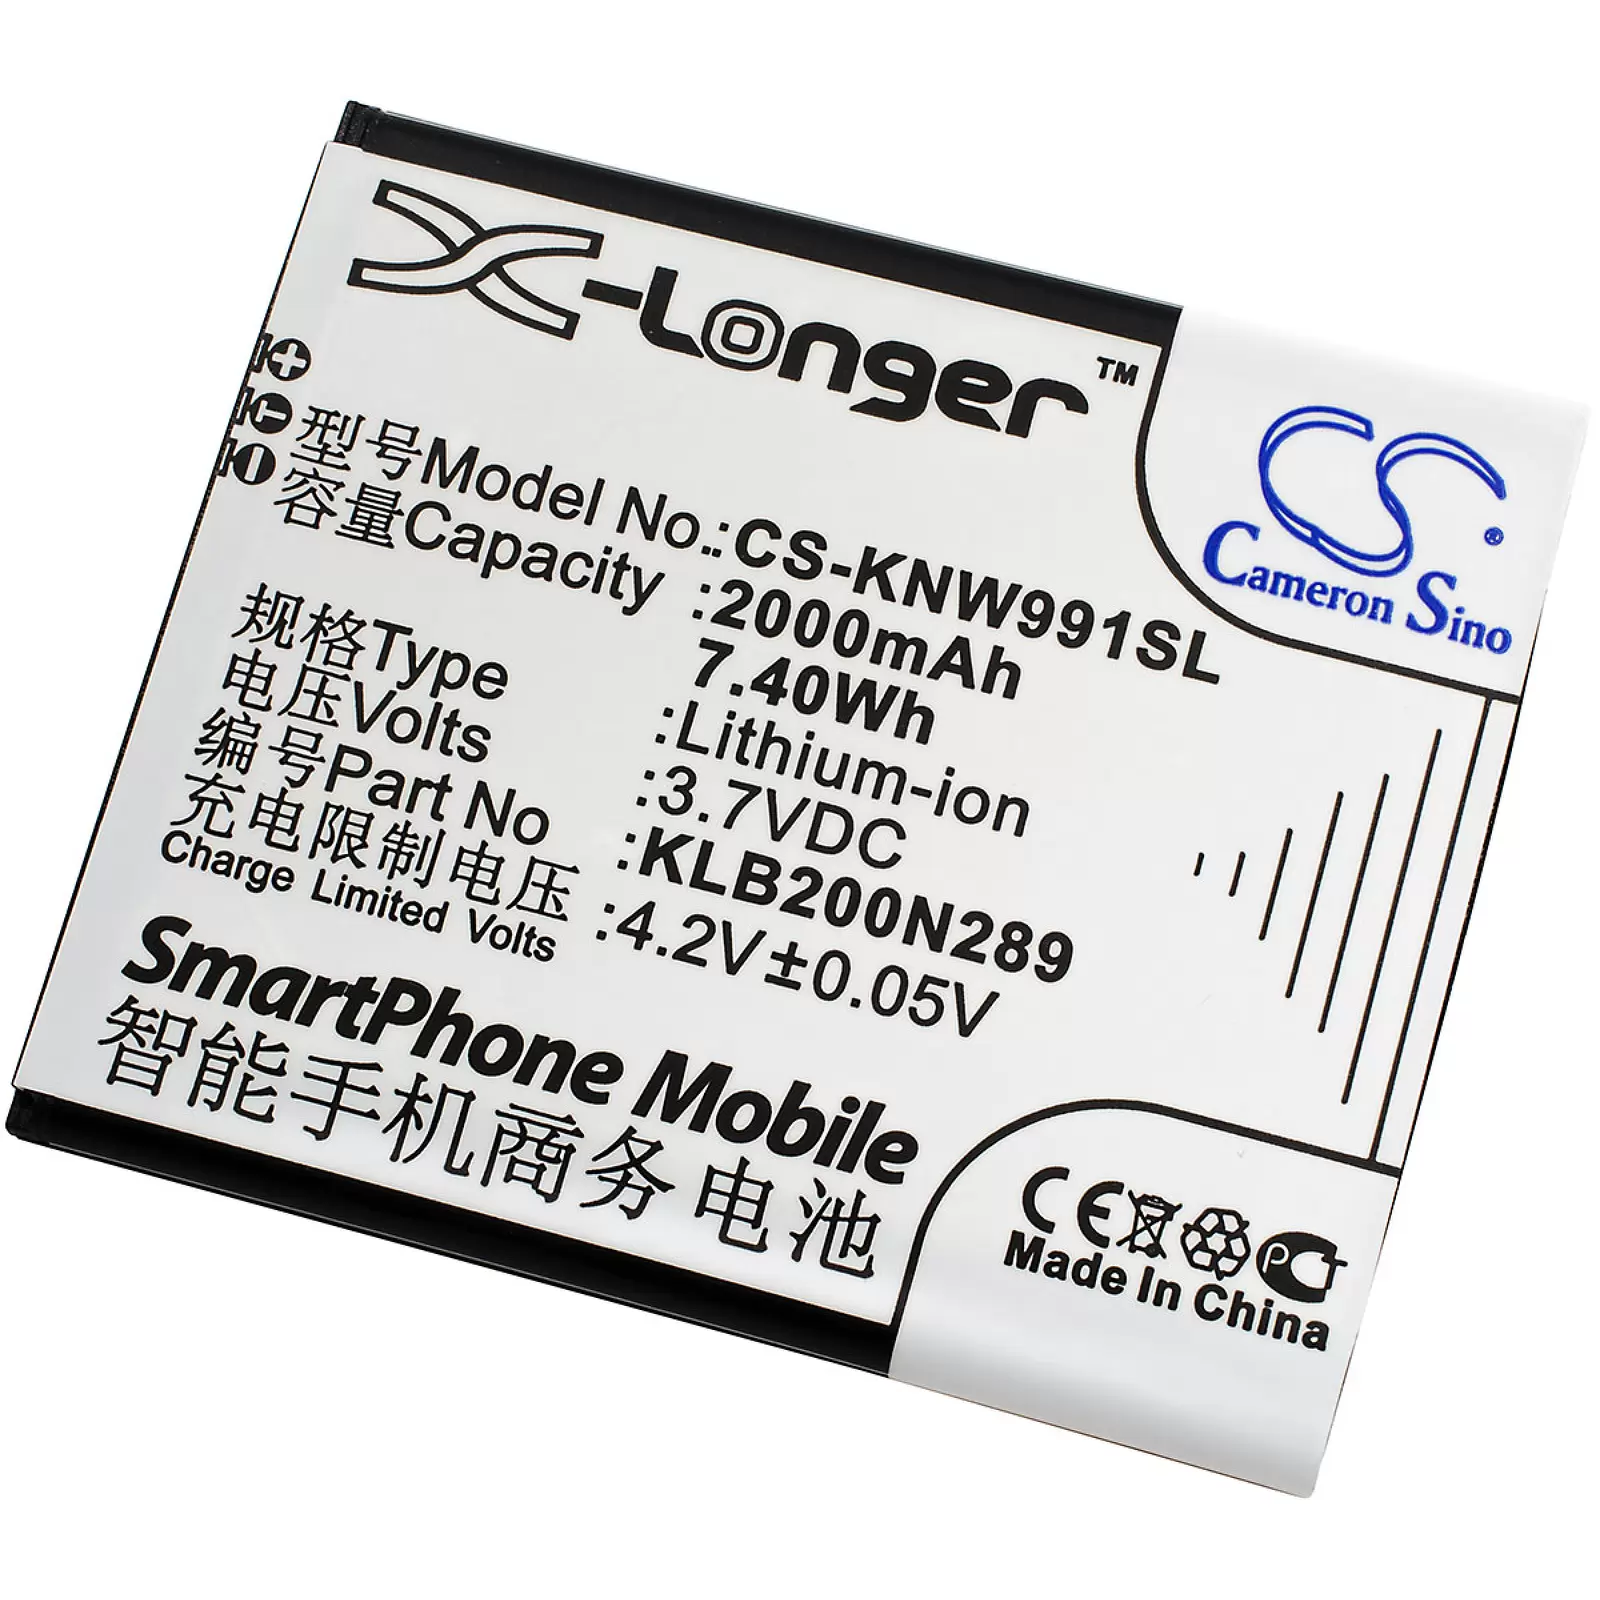 Akku für Smartphone Modelo ZA950 / Typ KLB200N289